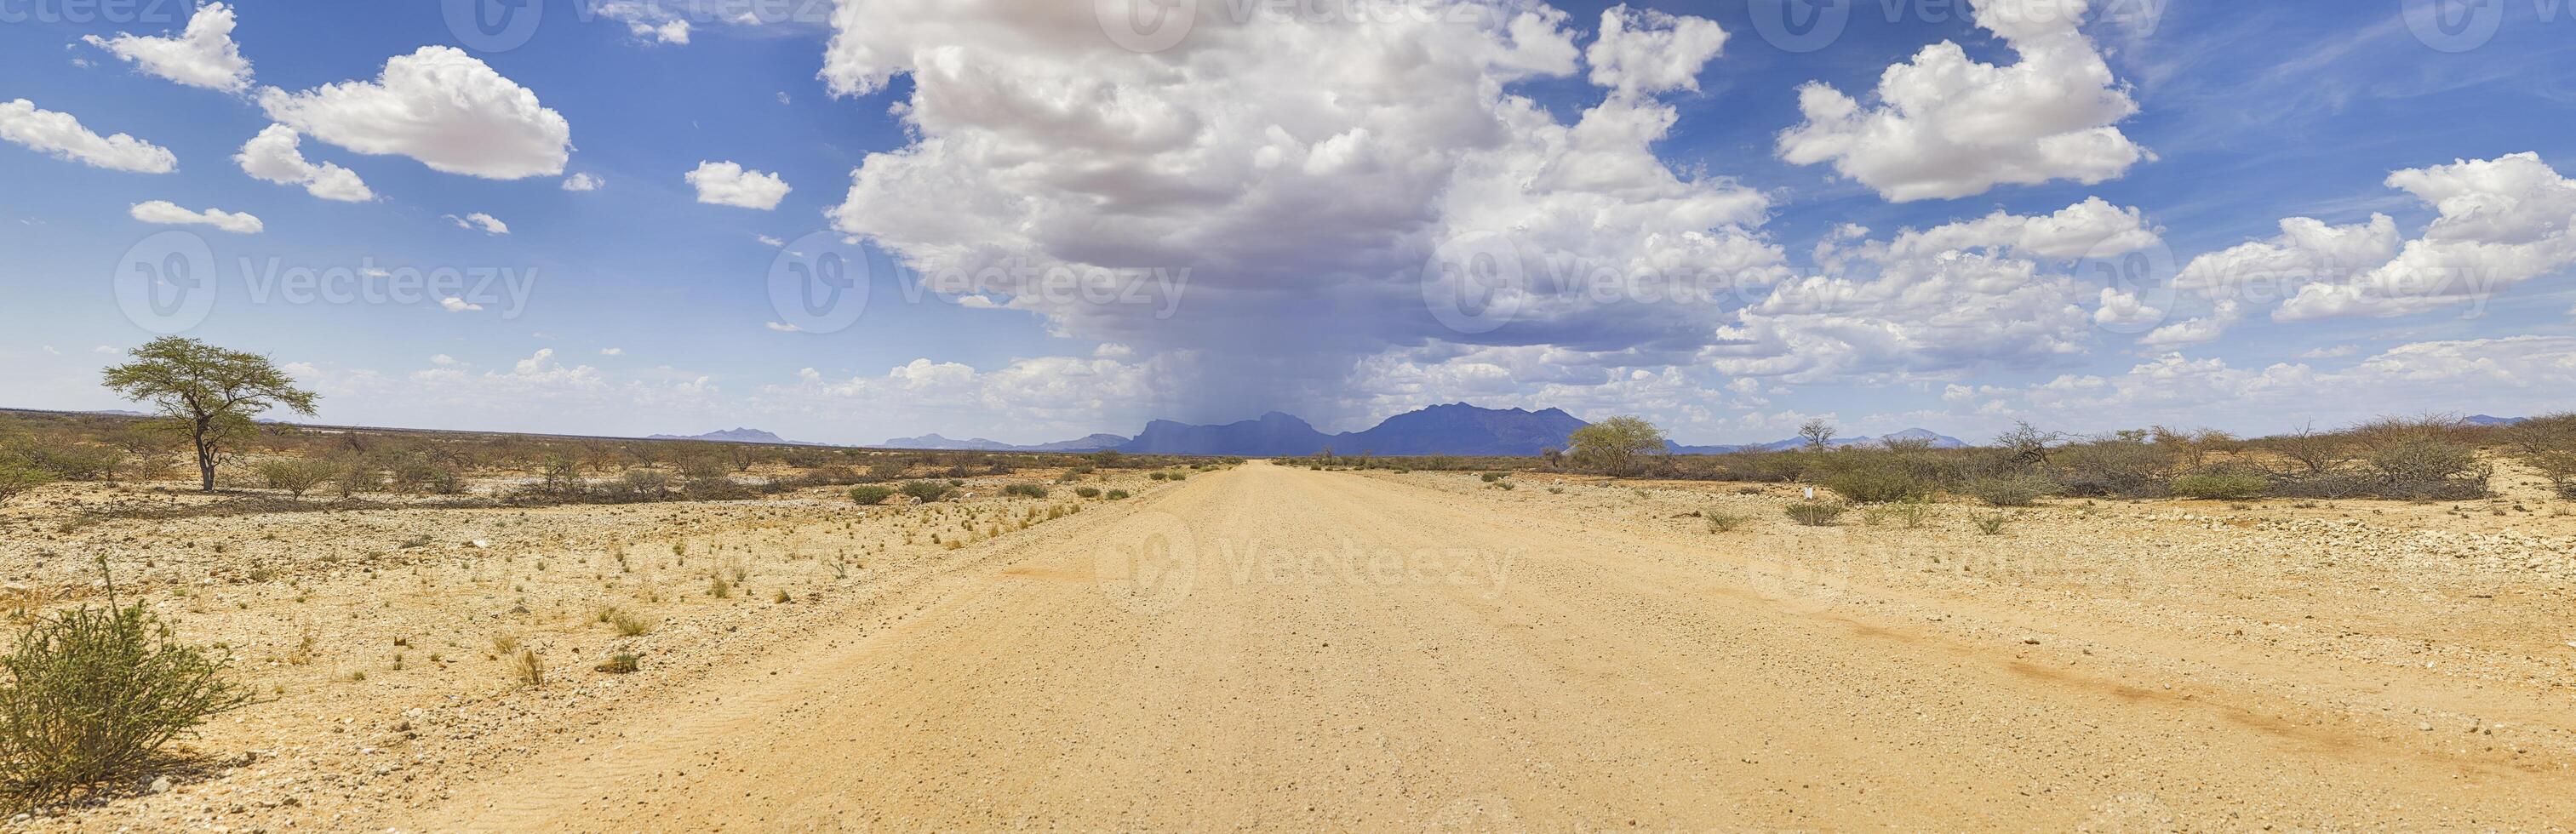 panoramisch afbeelding over- een grind weg in damaraland gedurende de regenachtig seizoen met storm wolken foto